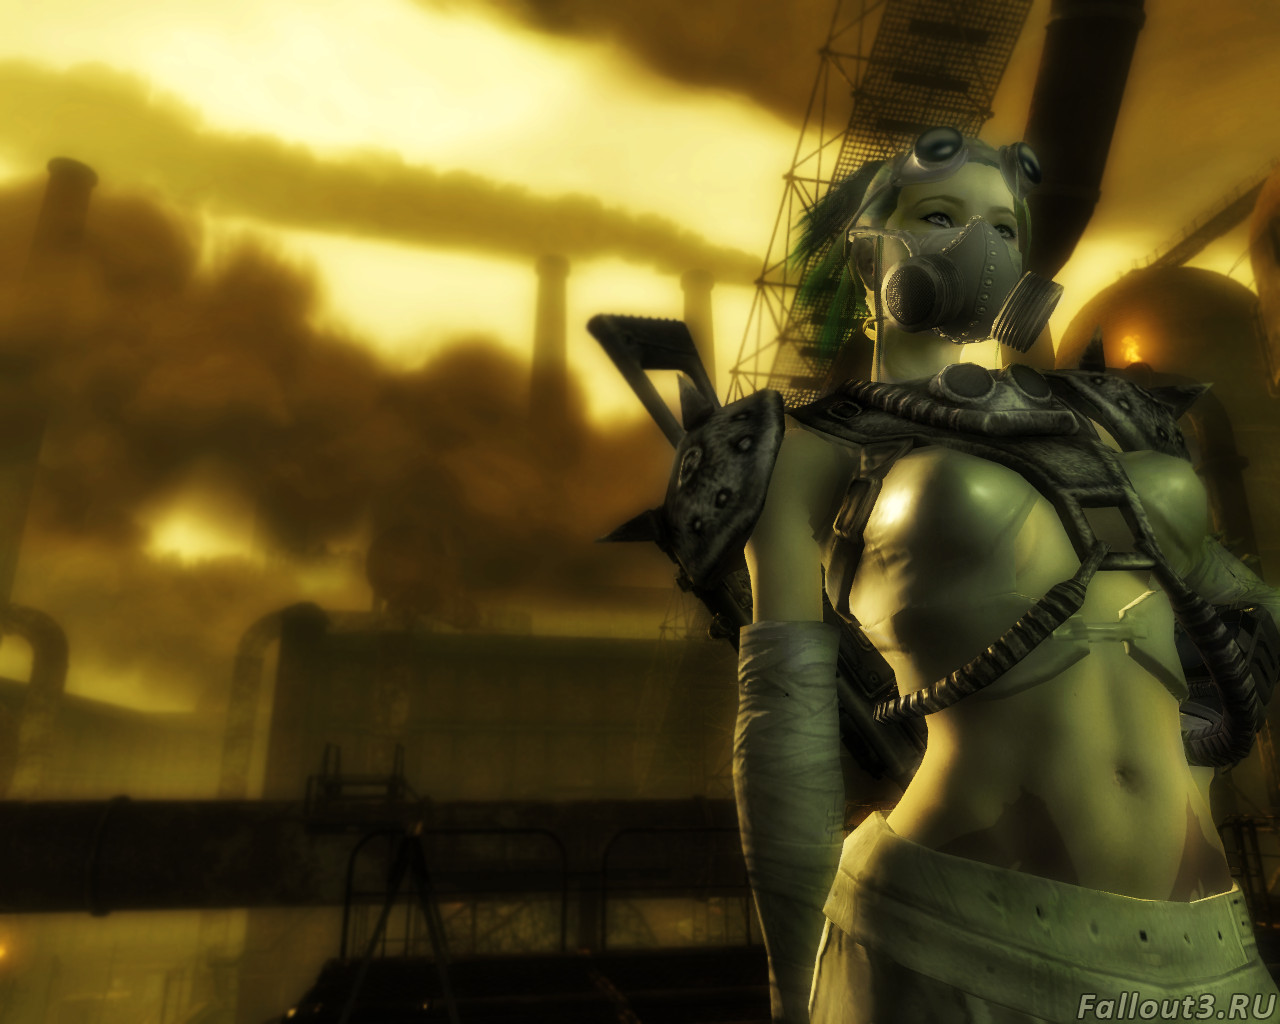 Fallout3.RU: Галерея. просто очень красивый скрин.